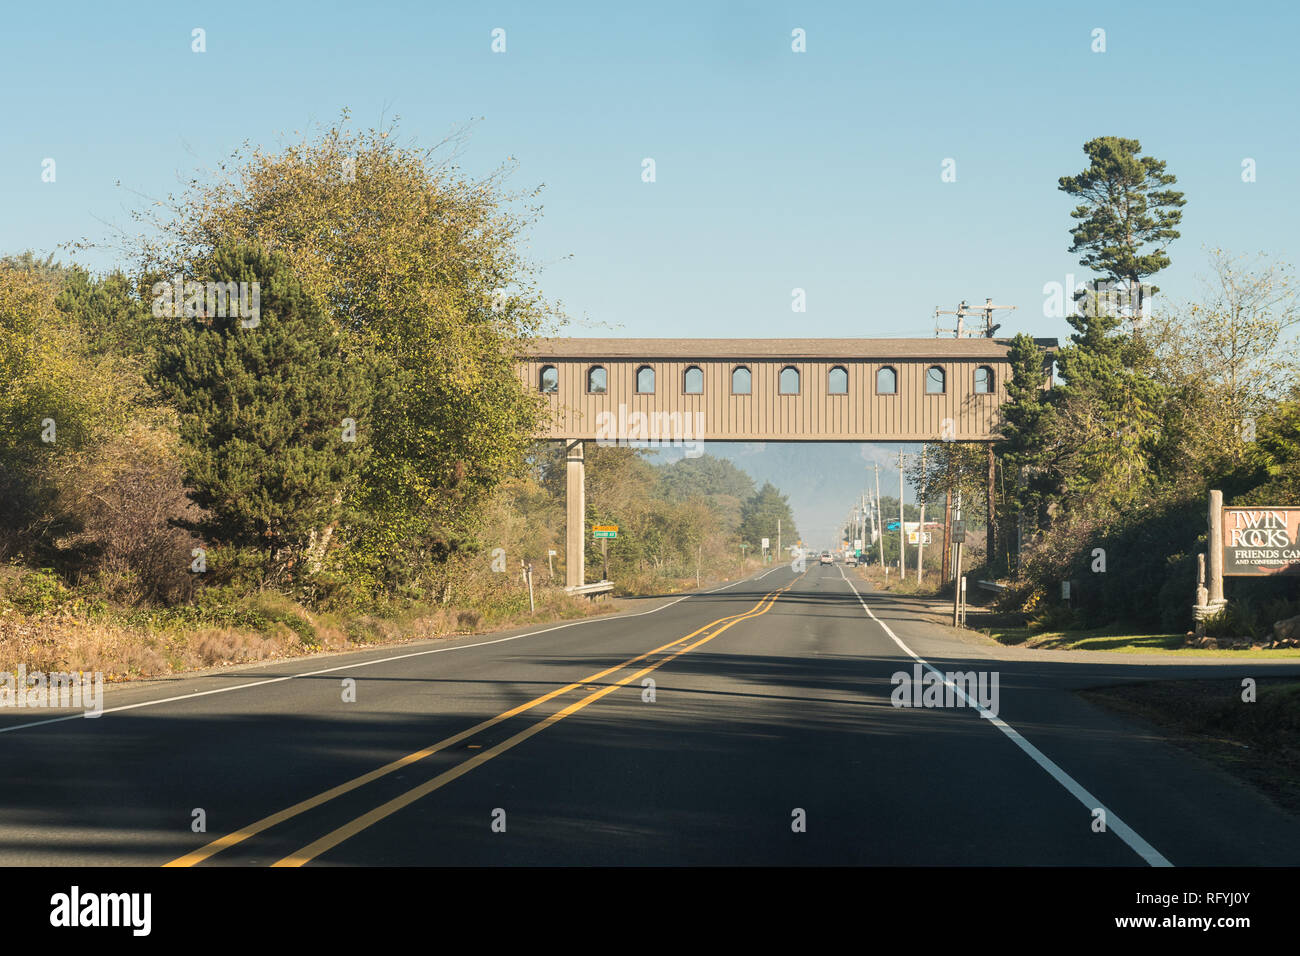 Passerella sopraelevata sulla strada nei pressi di scogli gemelli, Oregon, Stati Uniti d'America. Foto Stock